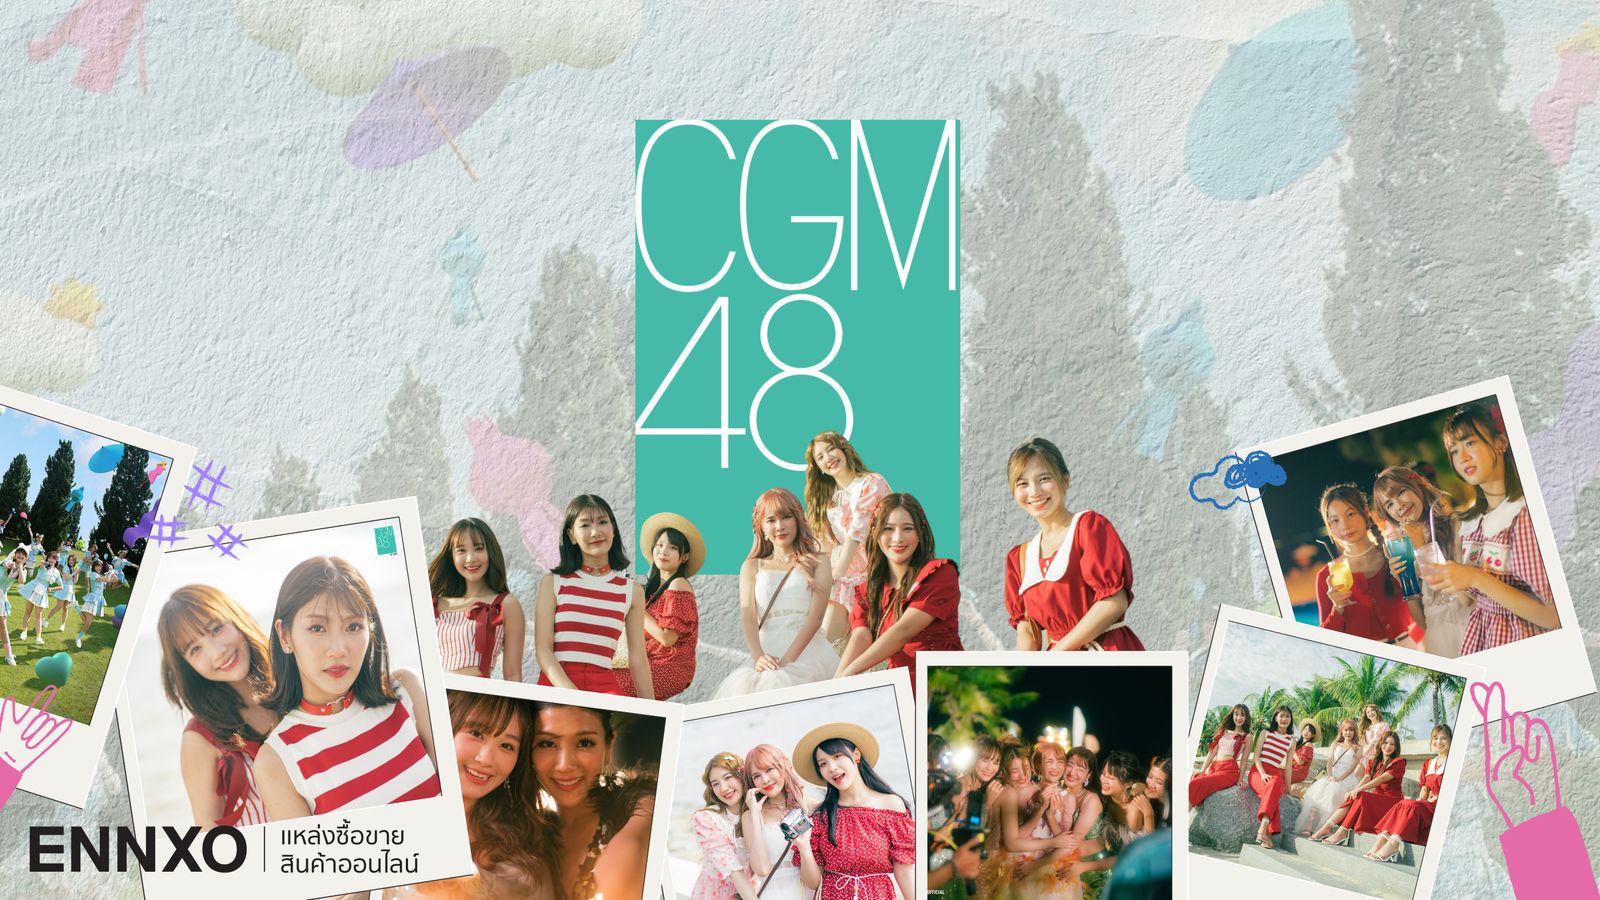 รู้จักวงไอดอลสาวเหนือ CGM48 สมาชิกรุ่น 1 มีใครกันบ้าง?